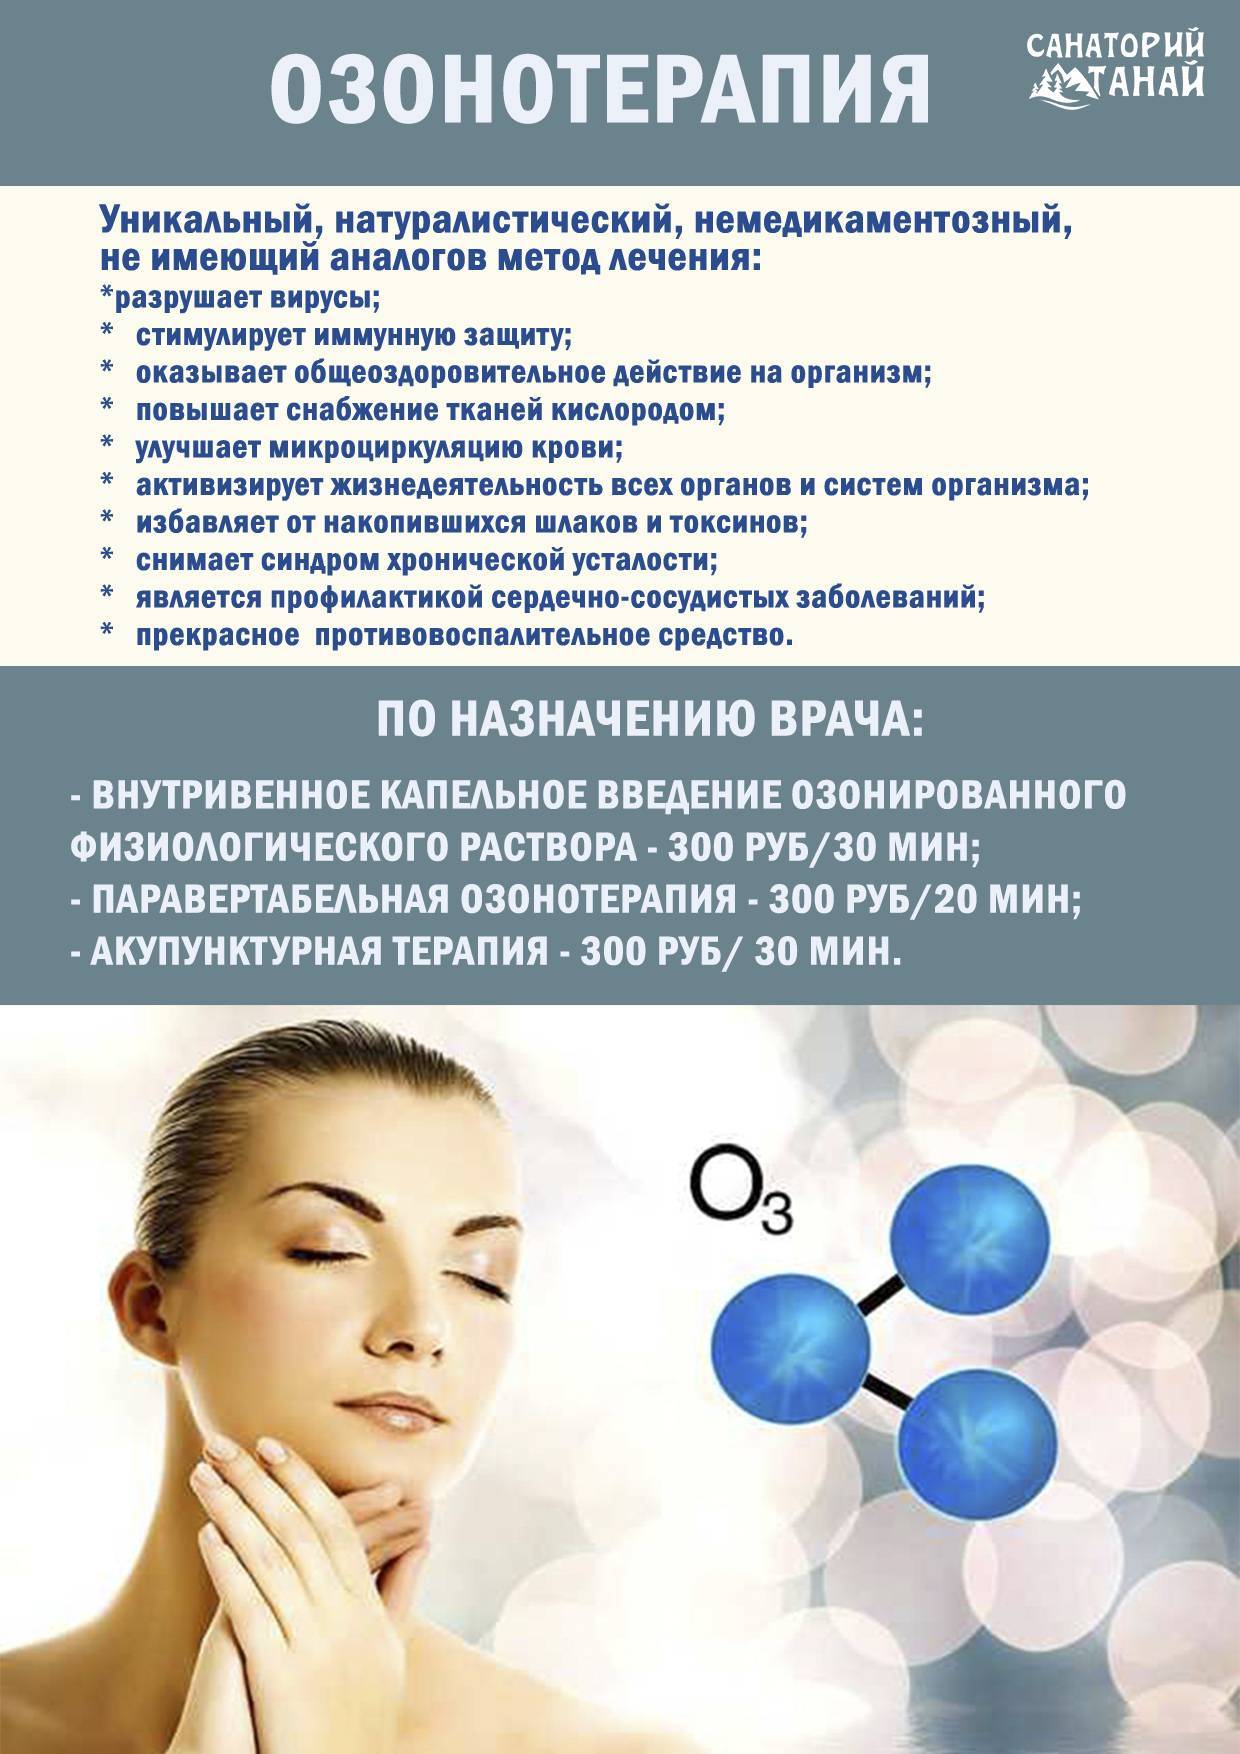 Лечение озонотерапией. Озонотерапия. Зоотерапия. Озонотерапия реклама. Озонотерапия внутривенно показания.